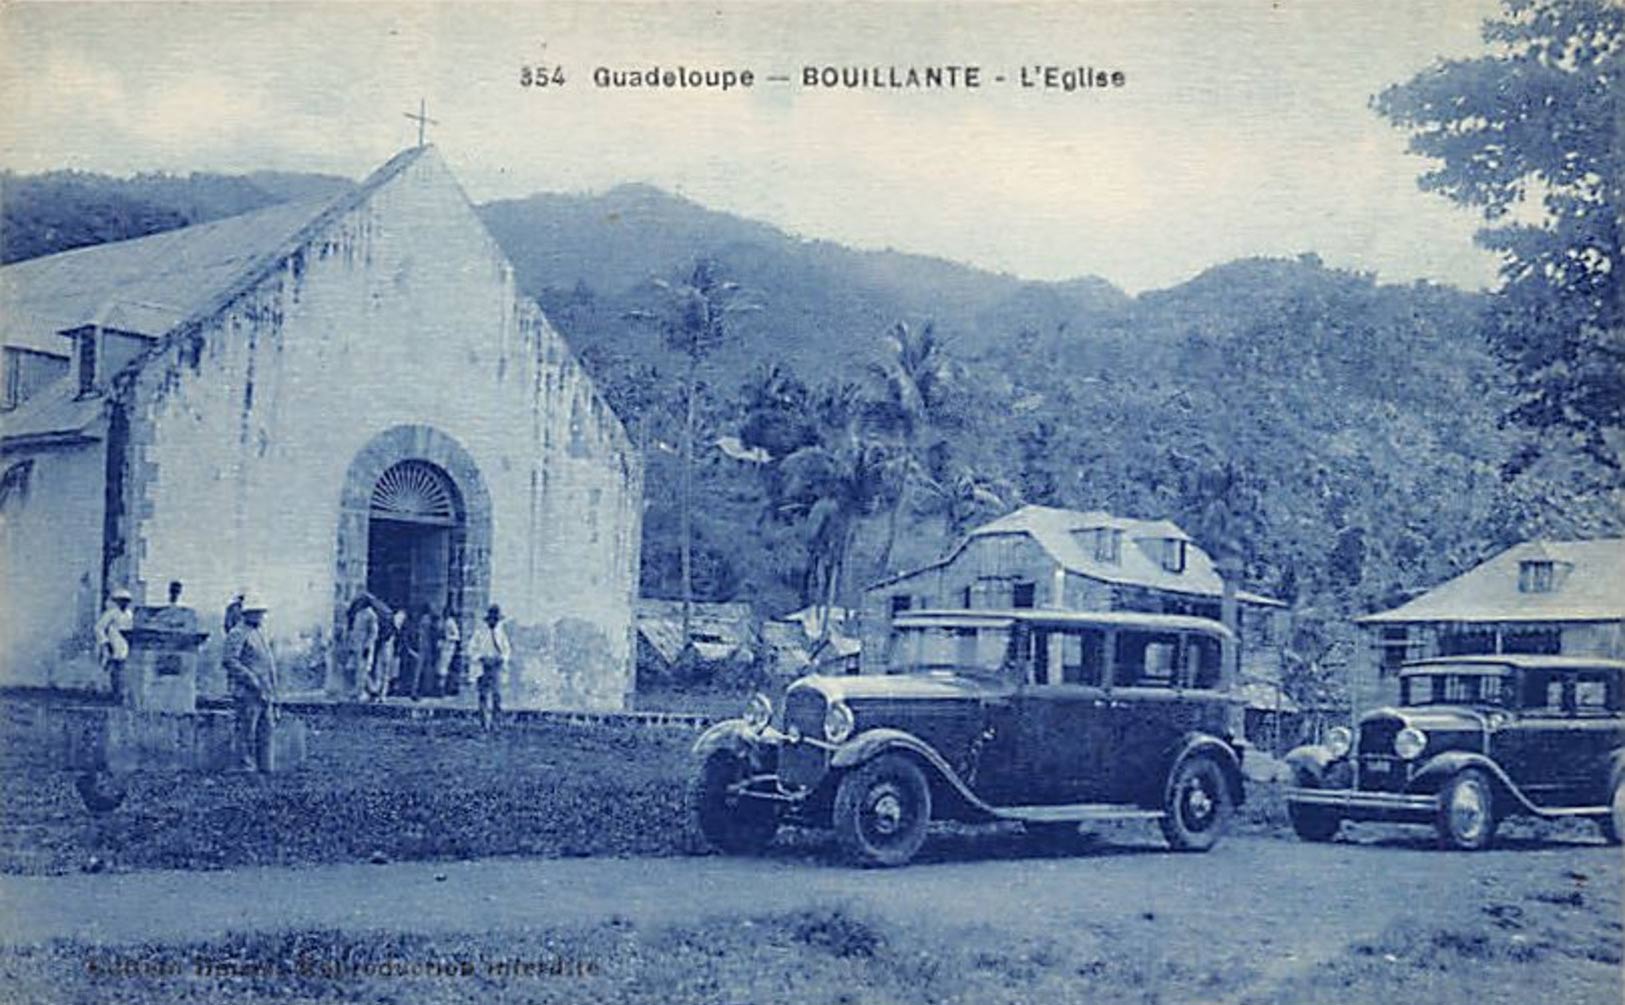 Bourg de Bouillante - Eglise et fontaine